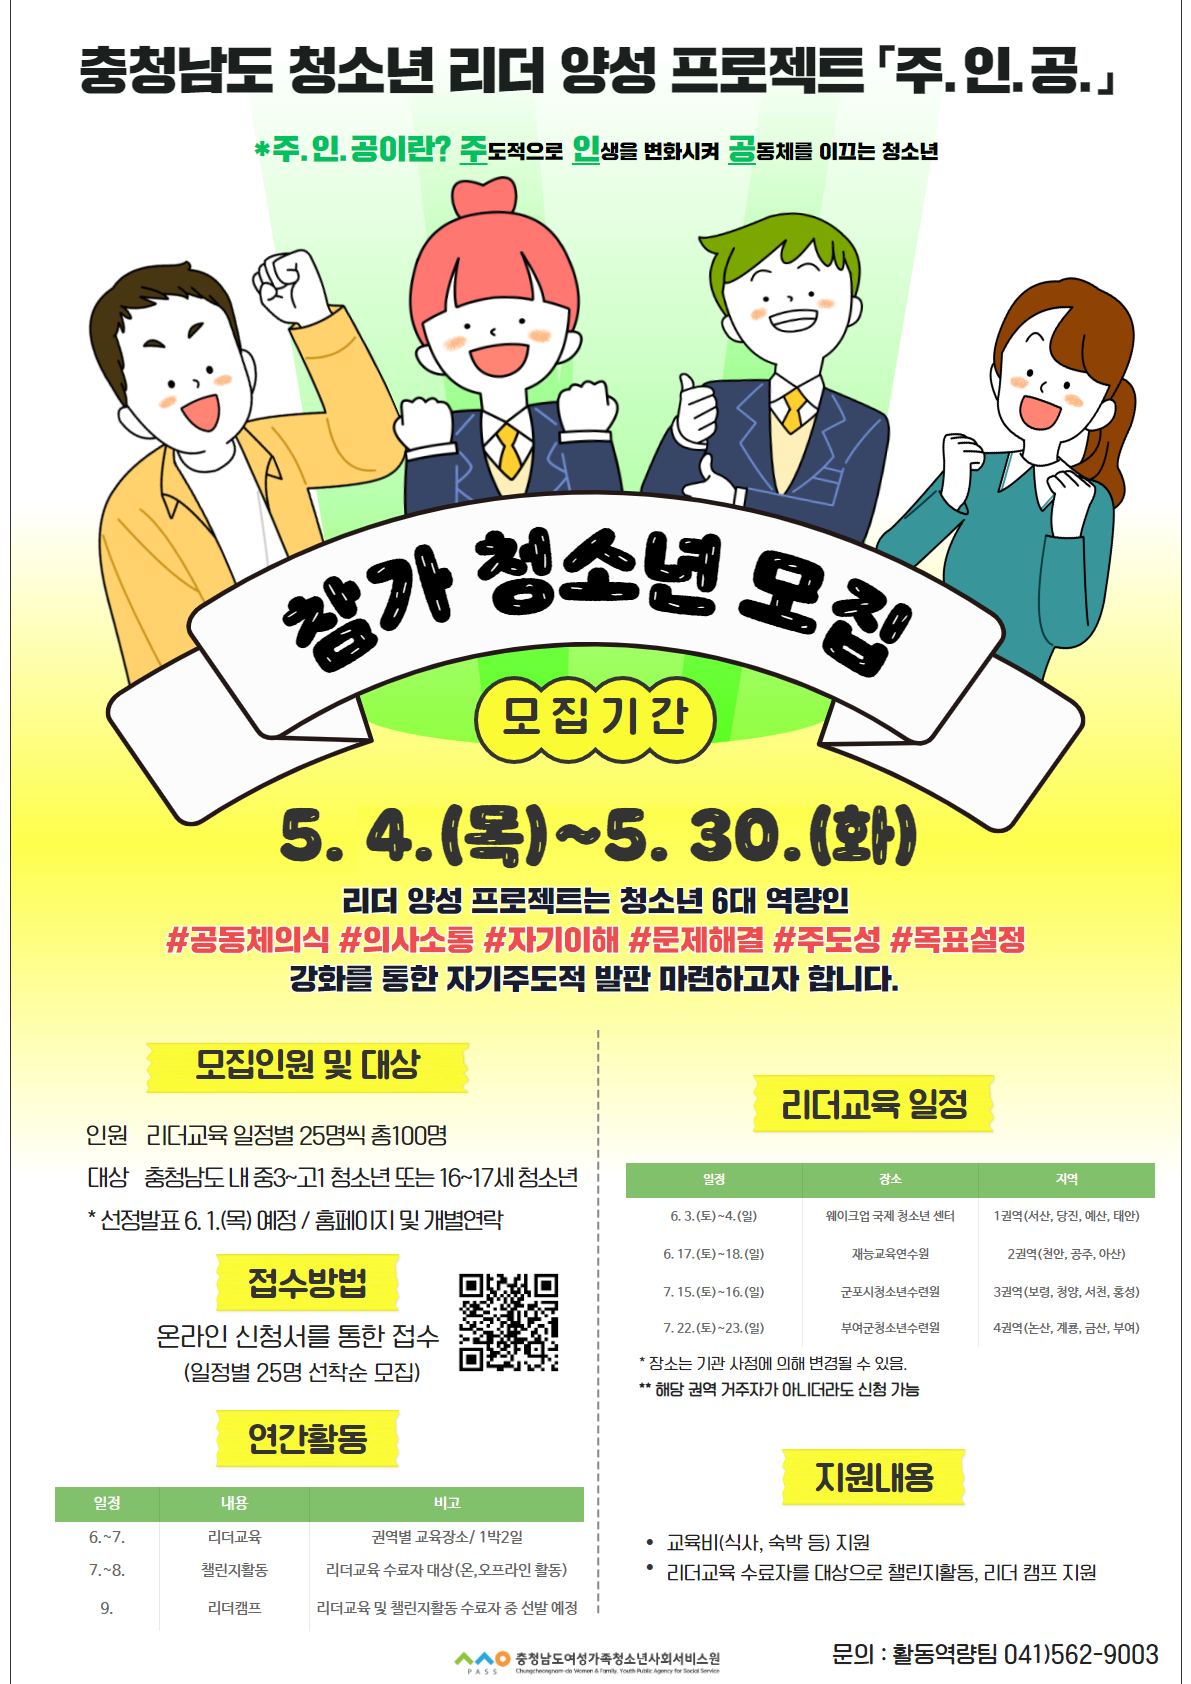 충청남도 청소년 리더 양성 프로젝트 「주. 인. 공.」참가자 모집 안내